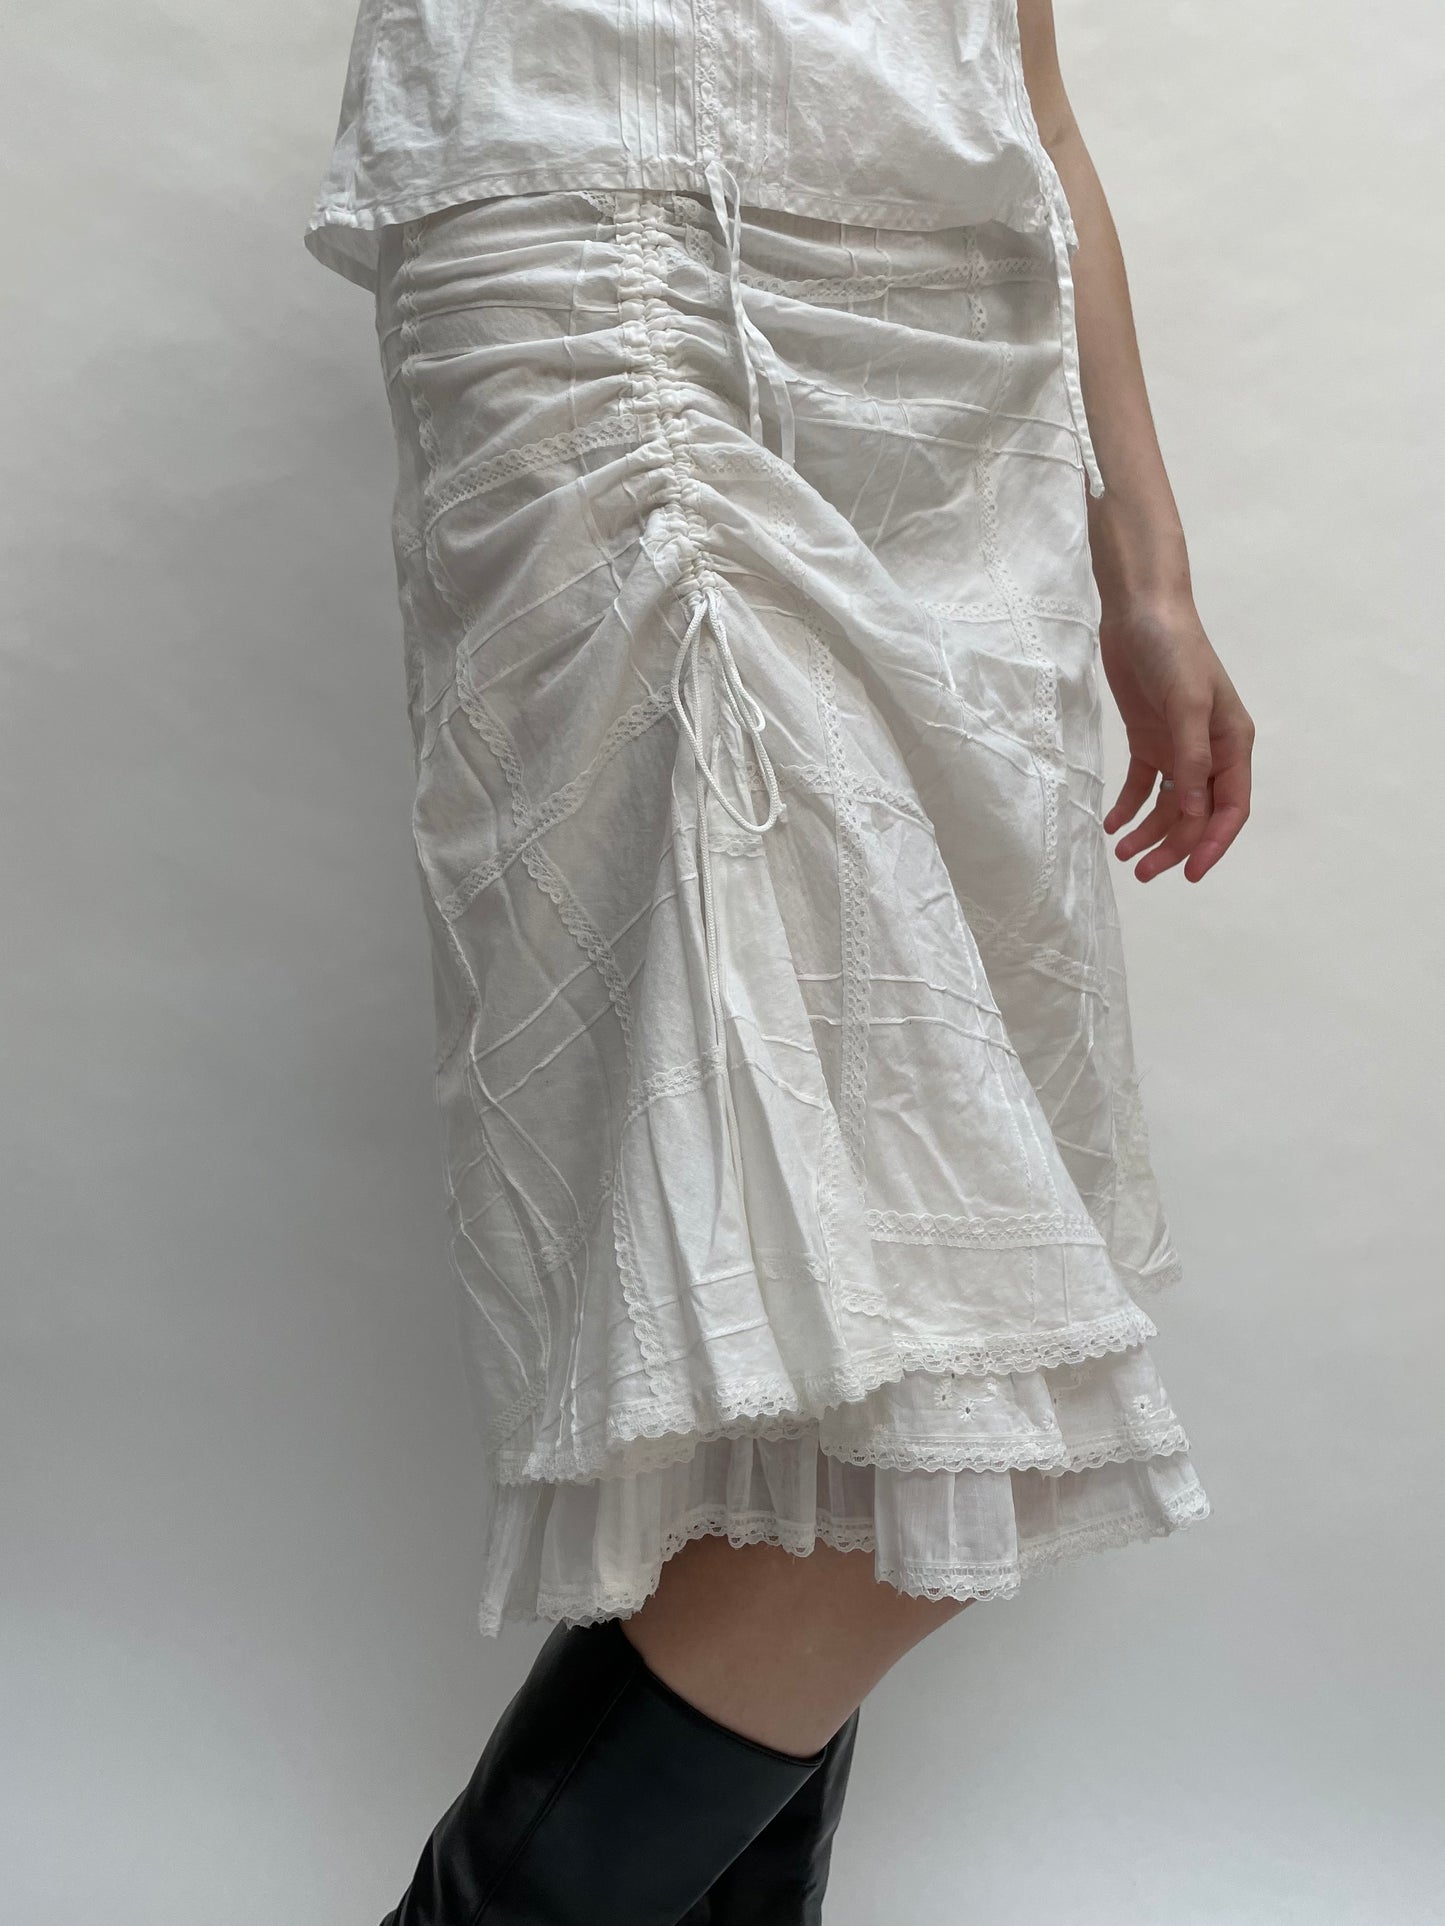 white cotton cami skirt set <3